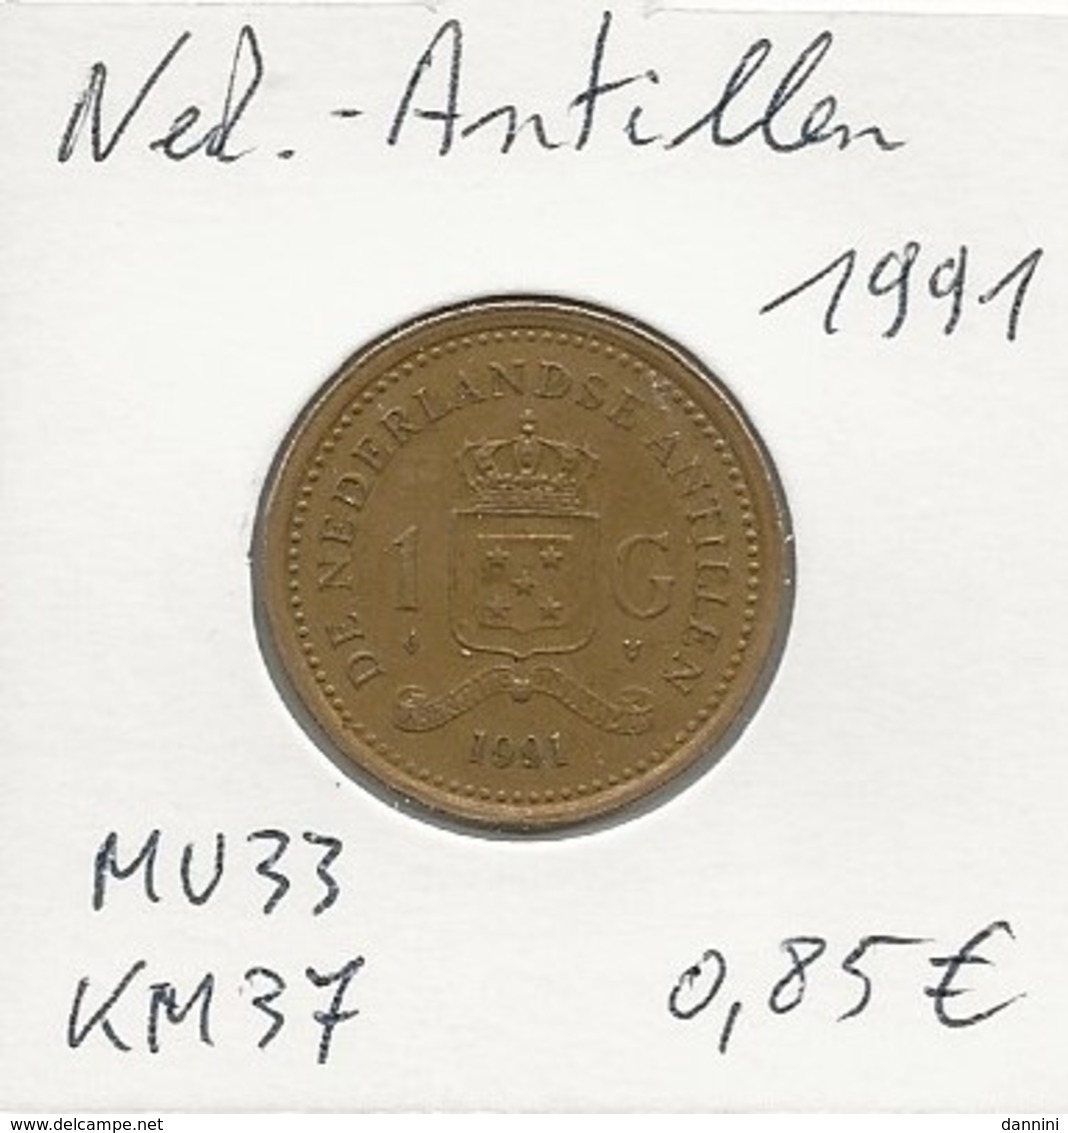 Nederlandse Antillen - 1 Gulden - 1991 - KM 37 - Antilles Néerlandaises